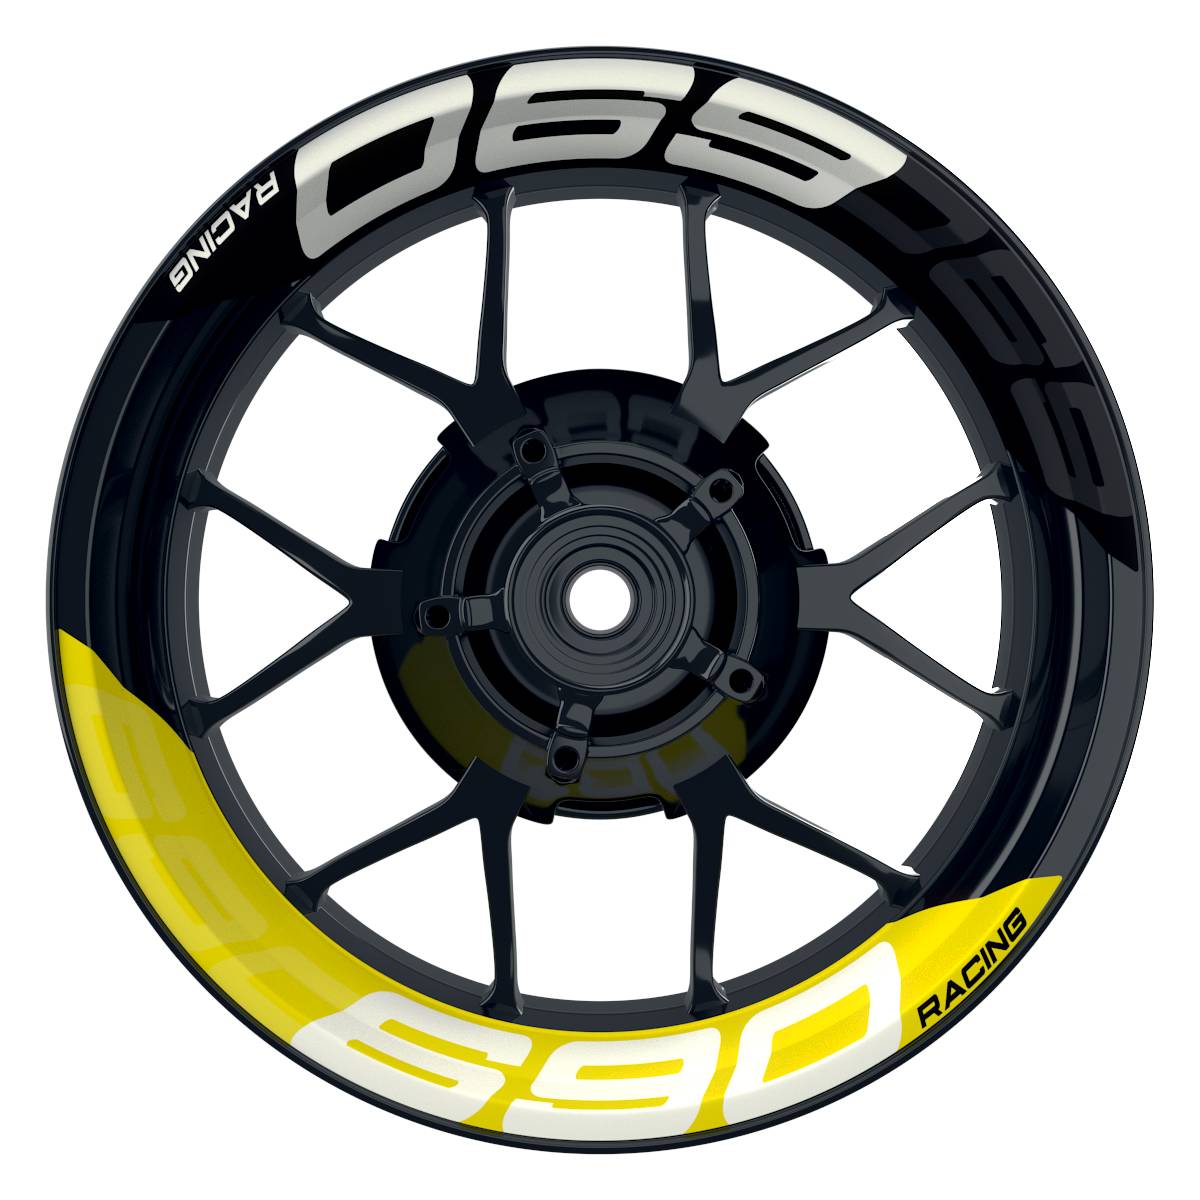 Wheelsticker Felgenaufkleber KTM Racing 690 halb halb V2 schwarz gelb Frontansicht